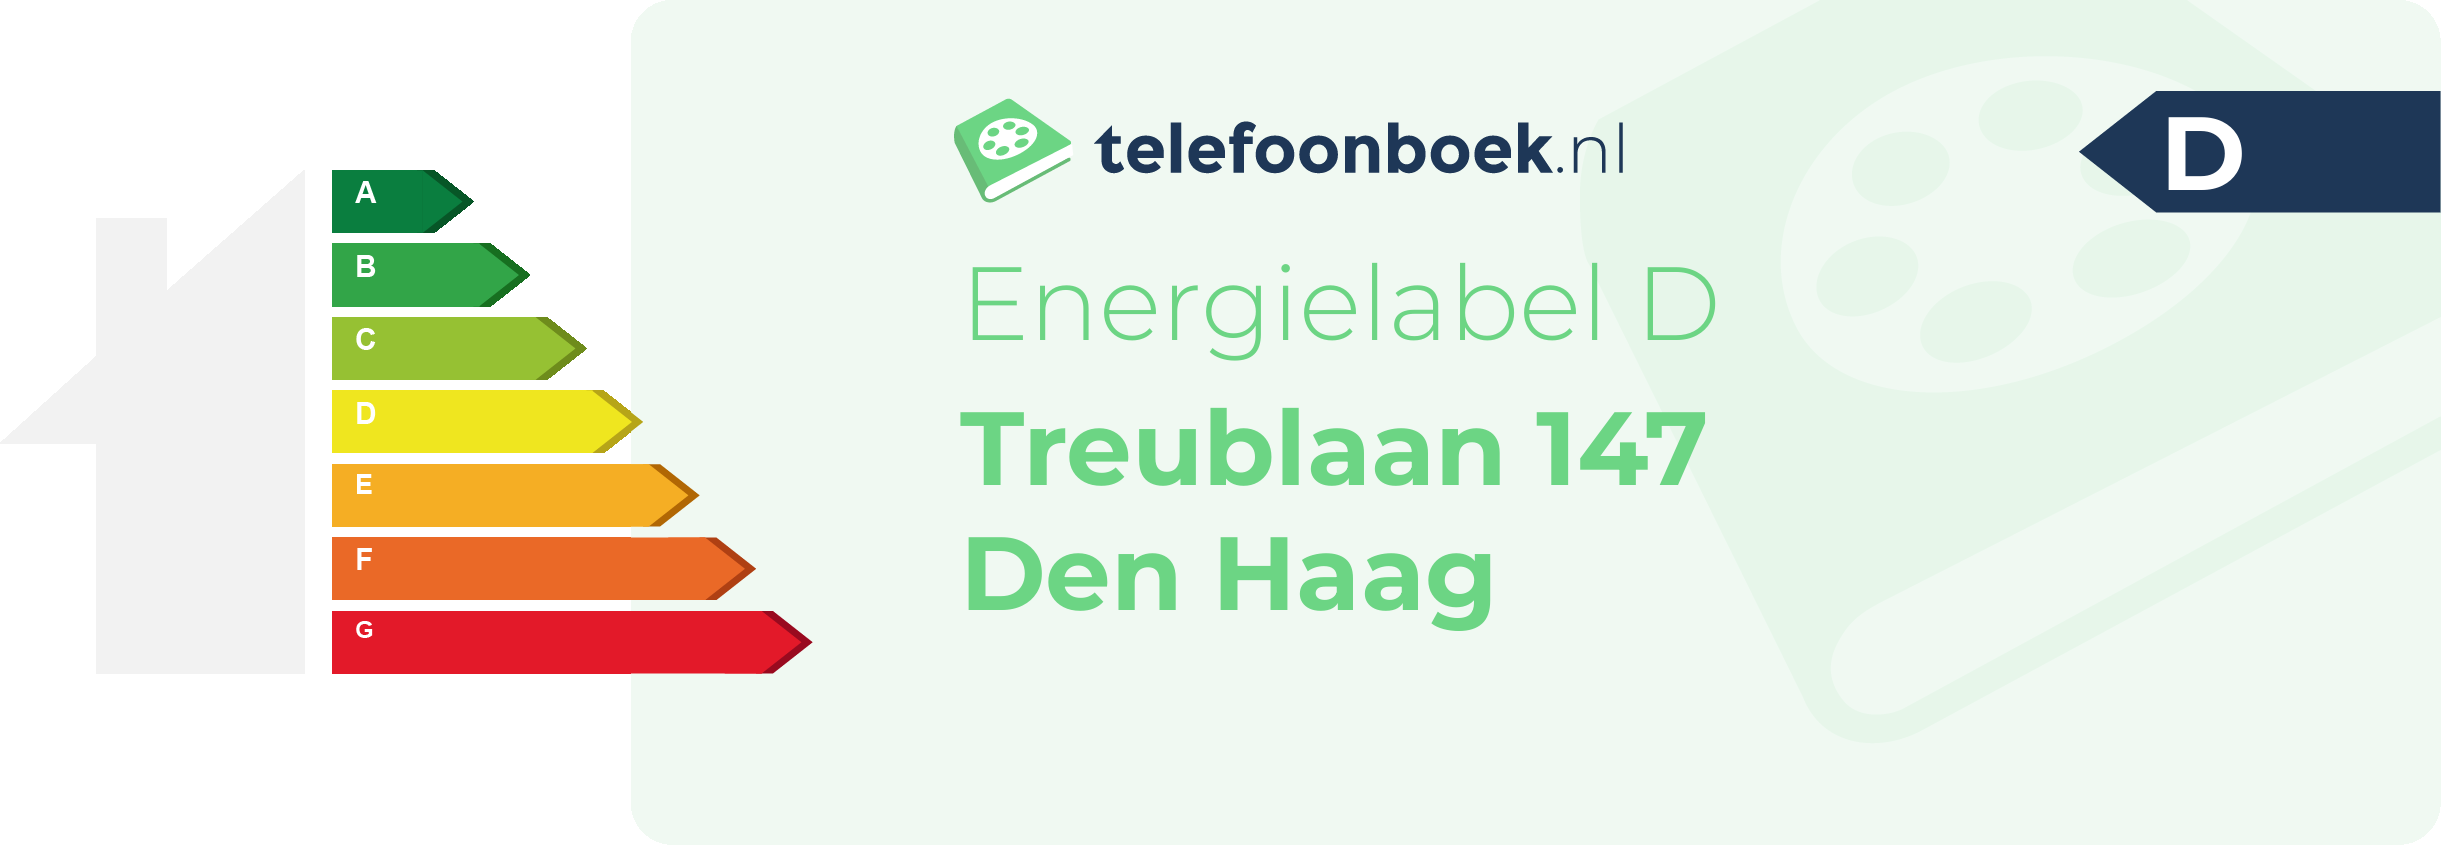 Energielabel Treublaan 147 Den Haag